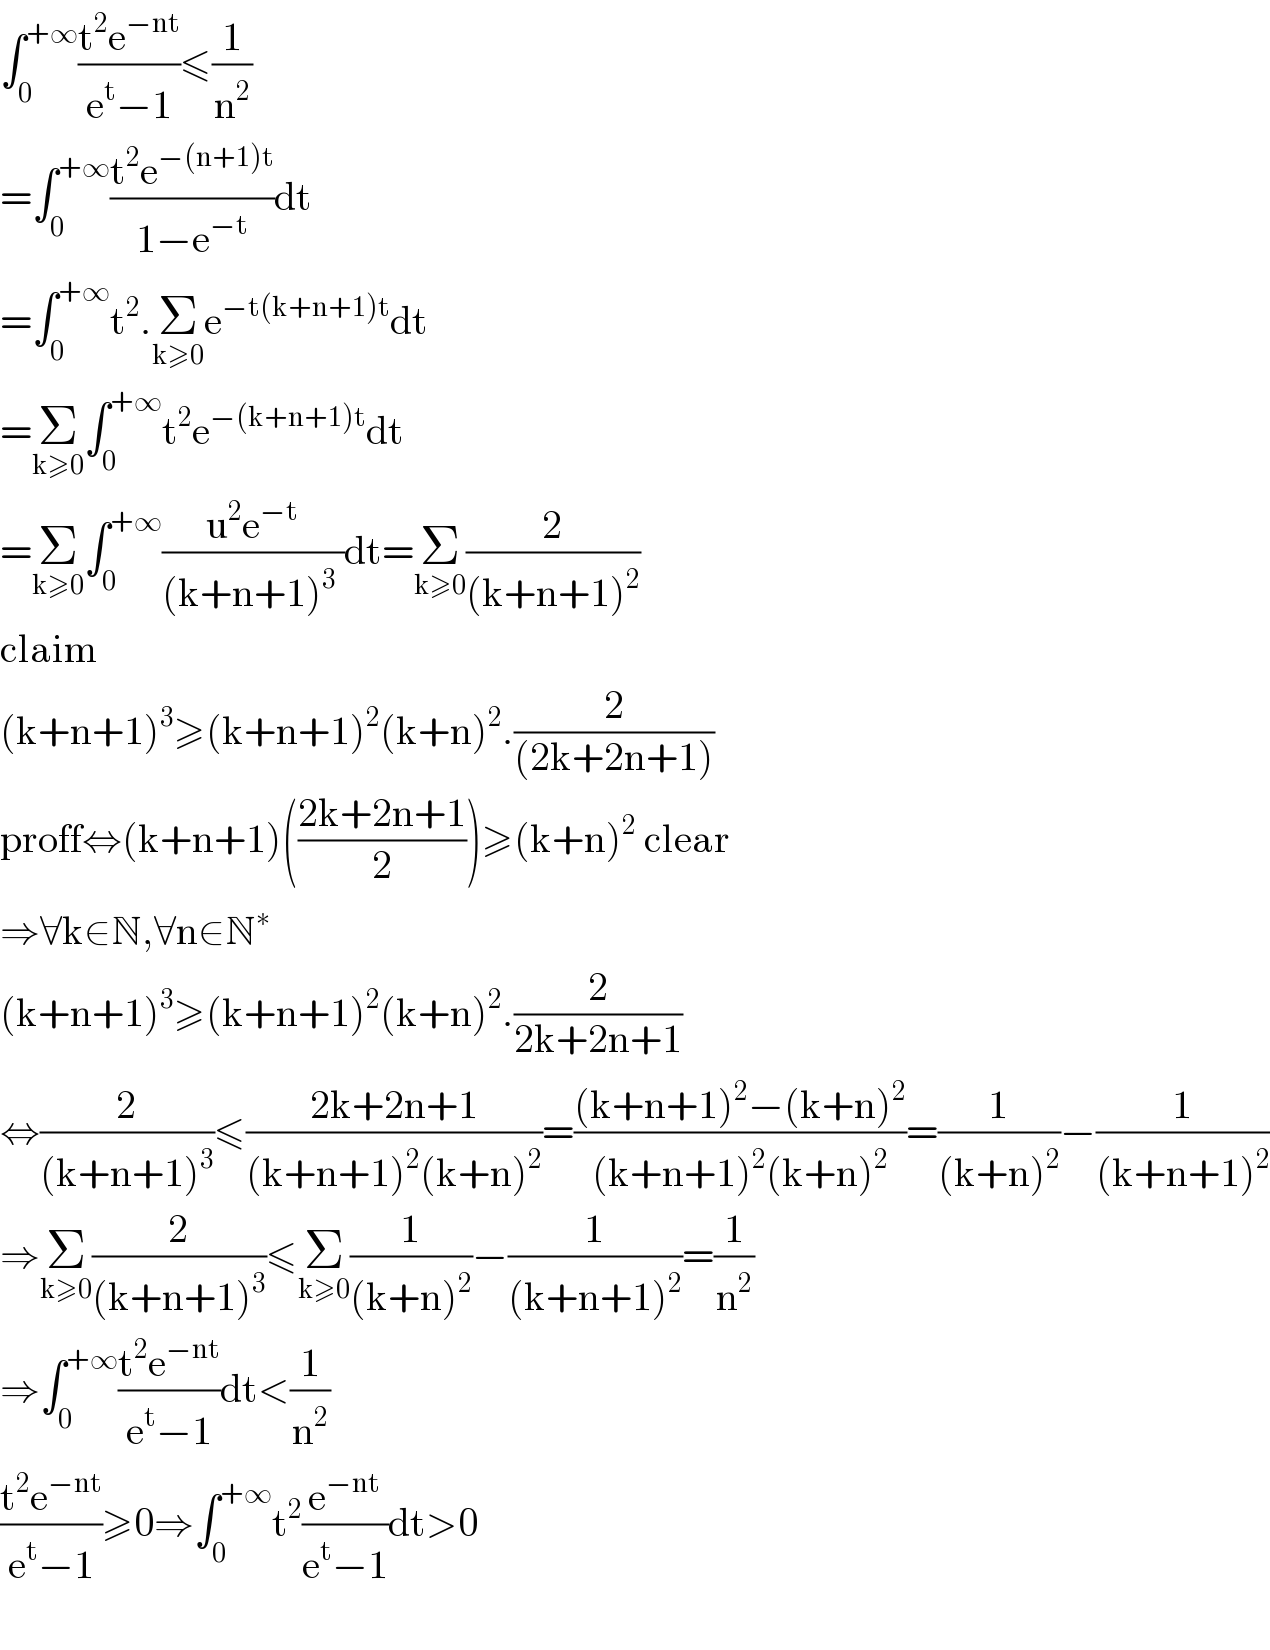 ∫_0 ^(+∞) ((t^2 e^(−nt) )/(e^t −1))≤(1/n^2 )  =∫_0 ^(+∞) ((t^2 e^(−(n+1)t) )/(1−e^(−t) ))dt  =∫_0 ^(+∞) t^2 .Σ_(k≥0) e^(−t(k+n+1)t) dt    =Σ_(k≥0) ∫_0 ^(+∞) t^2 e^(−(k+n+1)t) dt  =Σ_(k≥0) ∫_0 ^(+∞) ((u^2 e^(−t) )/((k+n+1)^3  ))dt=Σ_(k≥0) (2/((k+n+1)^2 ))  claim  (k+n+1)^3 ≥(k+n+1)^2 (k+n)^2 .(2/((2k+2n+1)))  proff⇔(k+n+1)(((2k+2n+1)/2))≥(k+n)^2  clear  ⇒∀k∈N,∀n∈N^∗   (k+n+1)^3 ≥(k+n+1)^2 (k+n)^2 .(2/(2k+2n+1))  ⇔(2/((k+n+1)^3 ))≤((2k+2n+1)/((k+n+1)^2 (k+n)^2 ))=(((k+n+1)^2 −(k+n)^2 )/((k+n+1)^2 (k+n)^2 ))=(1/((k+n)^2 ))−(1/((k+n+1)^2 ))  ⇒Σ_(k≥0) (2/((k+n+1)^3 ))≤Σ_(k≥0) (1/((k+n)^2 ))−(1/((k+n+1)^2 ))=(1/n^2 )  ⇒∫_0 ^(+∞) ((t^2 e^(−nt) )/(e^t −1))dt<(1/n^2 )  ((t^2 e^(−nt) )/(e^t −1))≥0⇒∫_0 ^(+∞) t^2 (e^(−nt) /(e^t −1))dt>0    